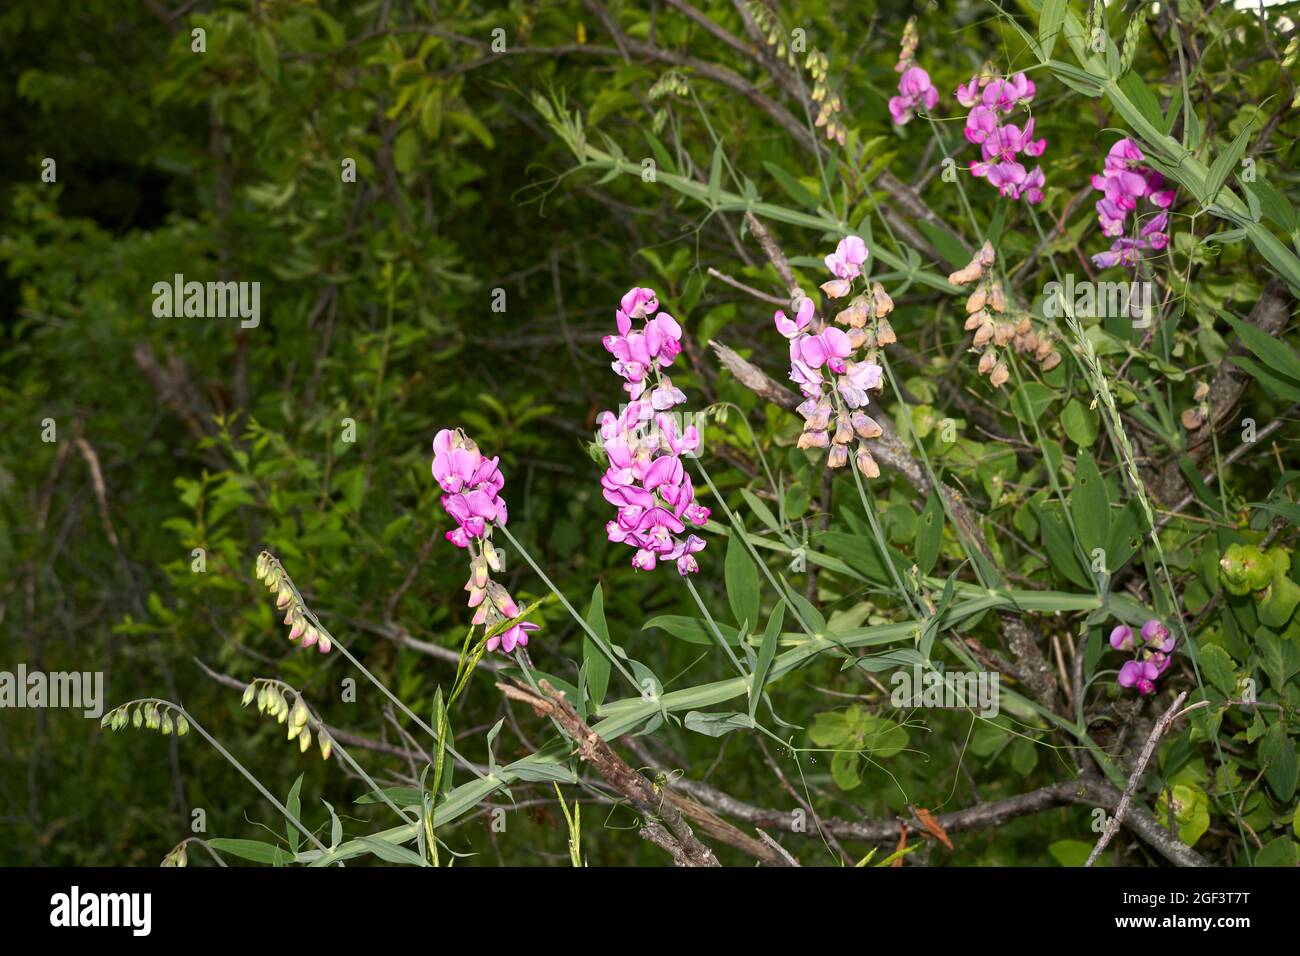 Lathyrus sylvestris purple flowers Stock Photo